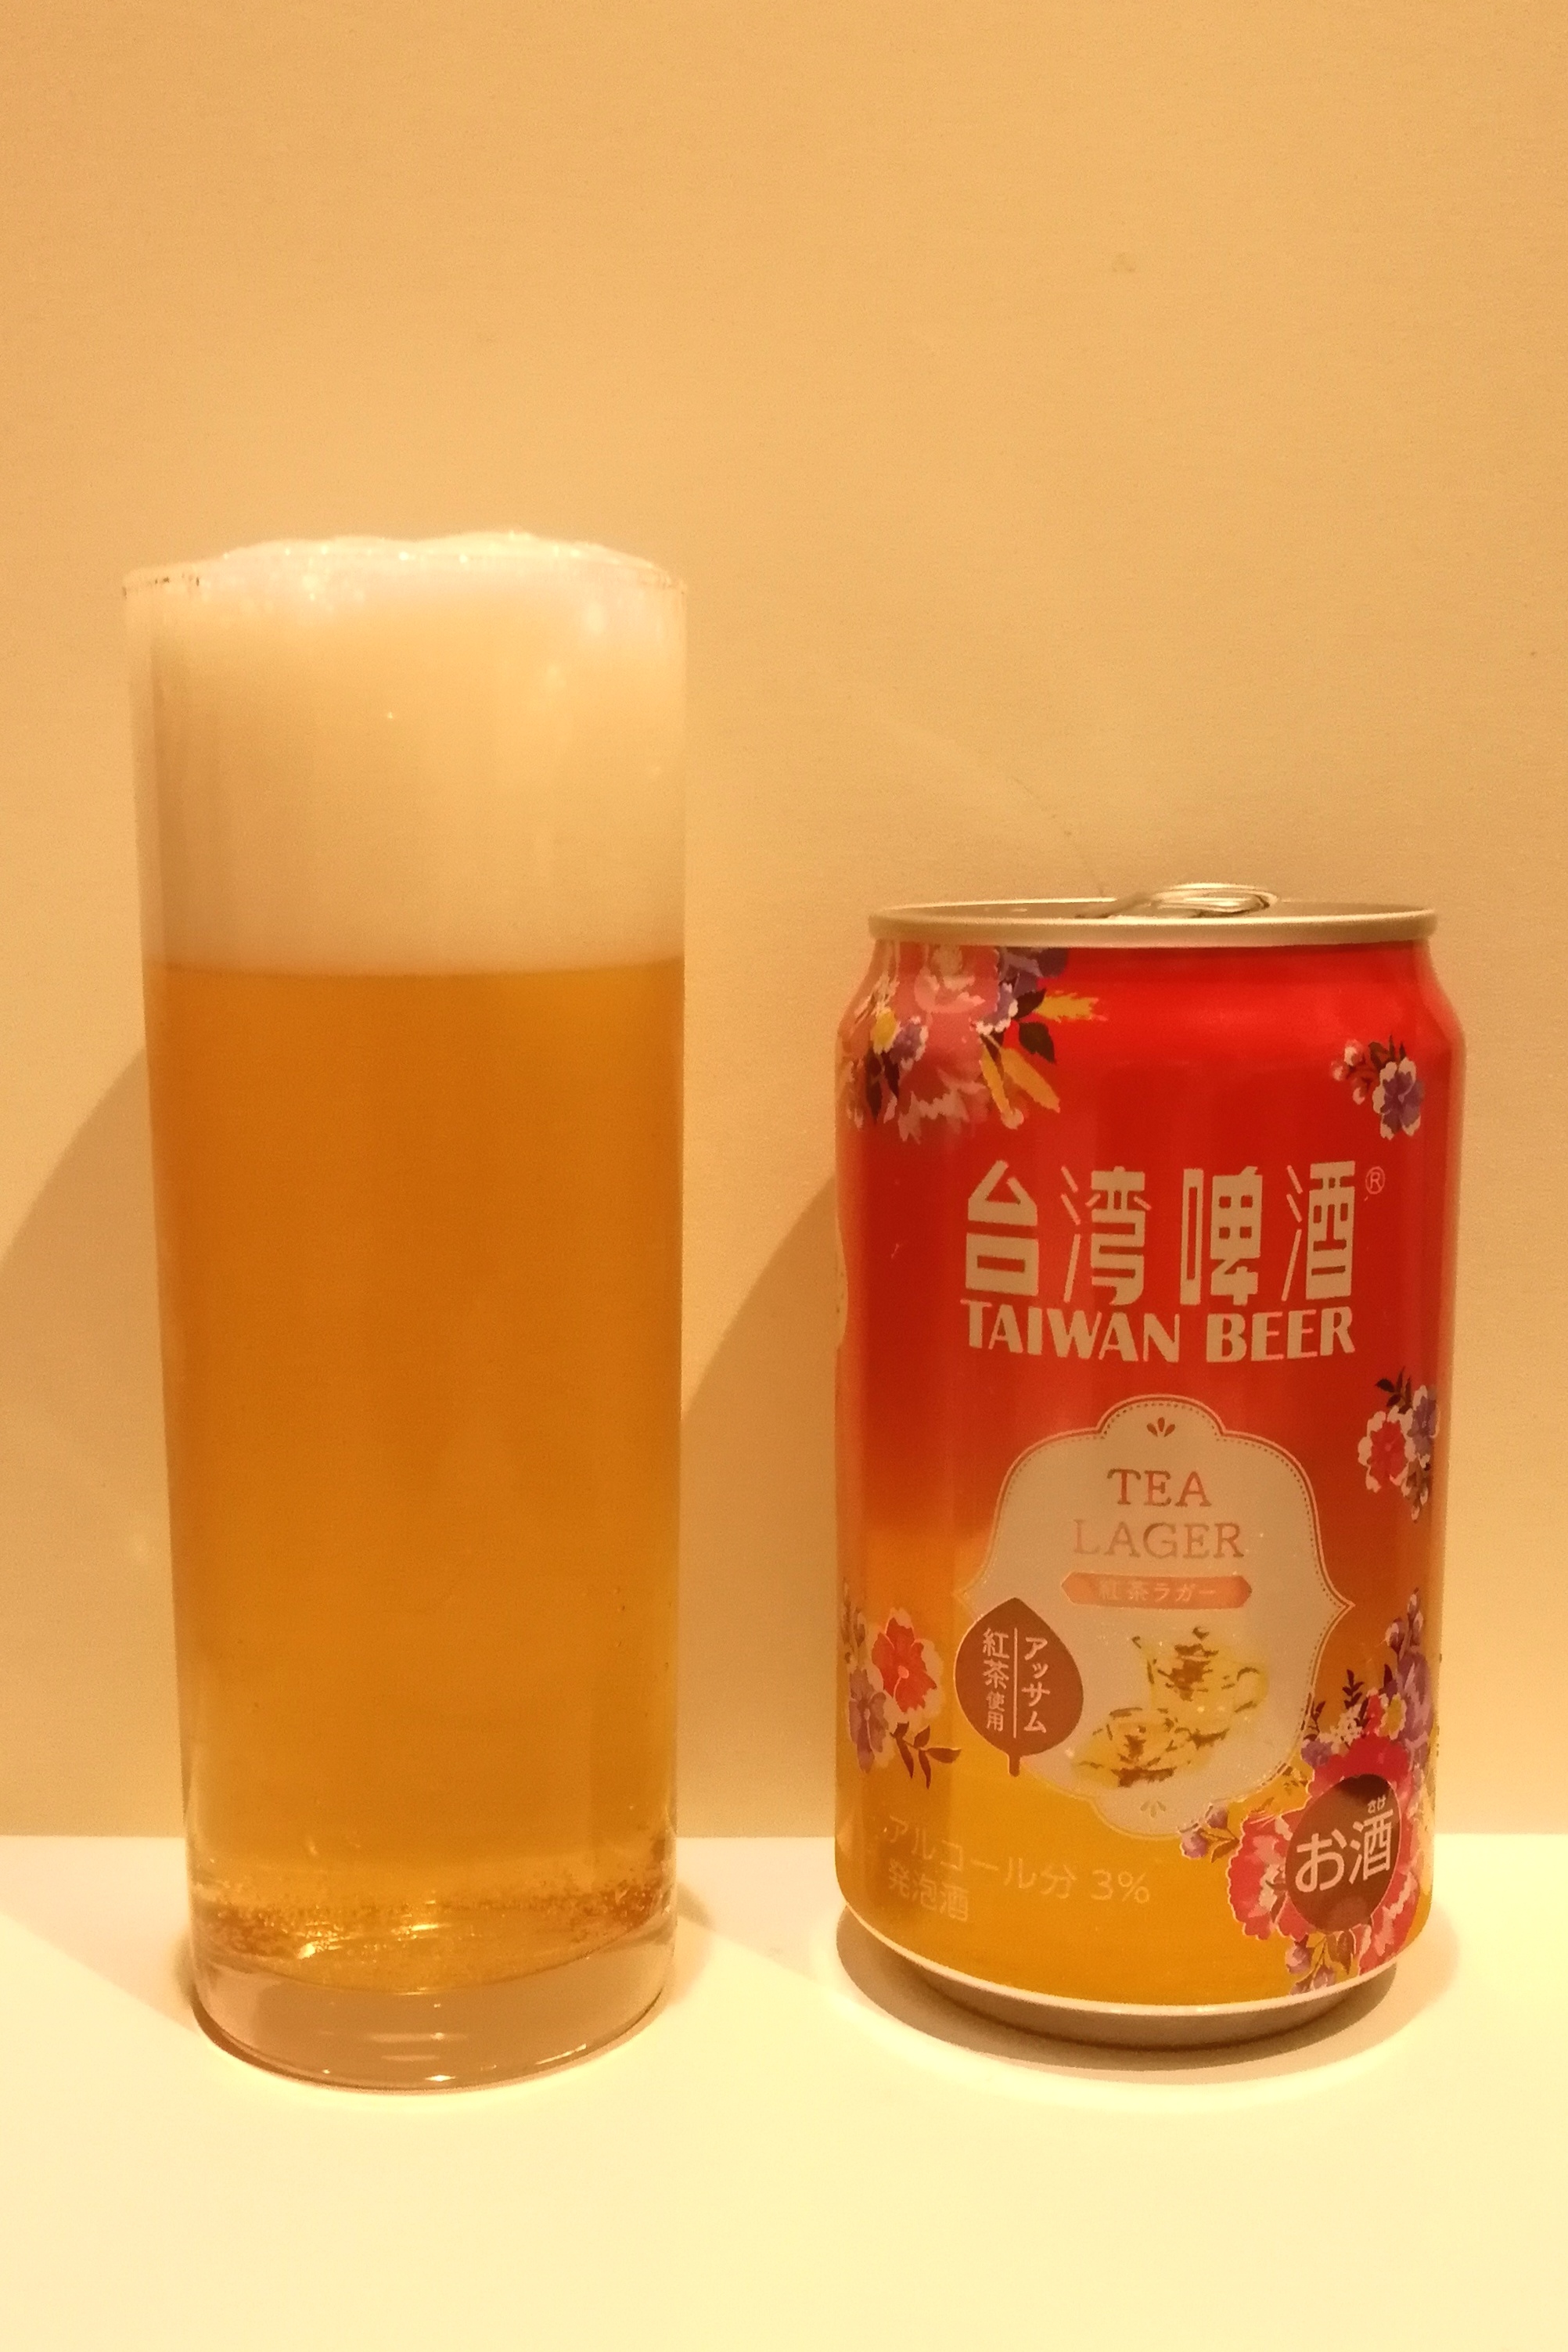 台湾啤酒,TEA_LAGER,TAIWANBEER,TEA_LAGER